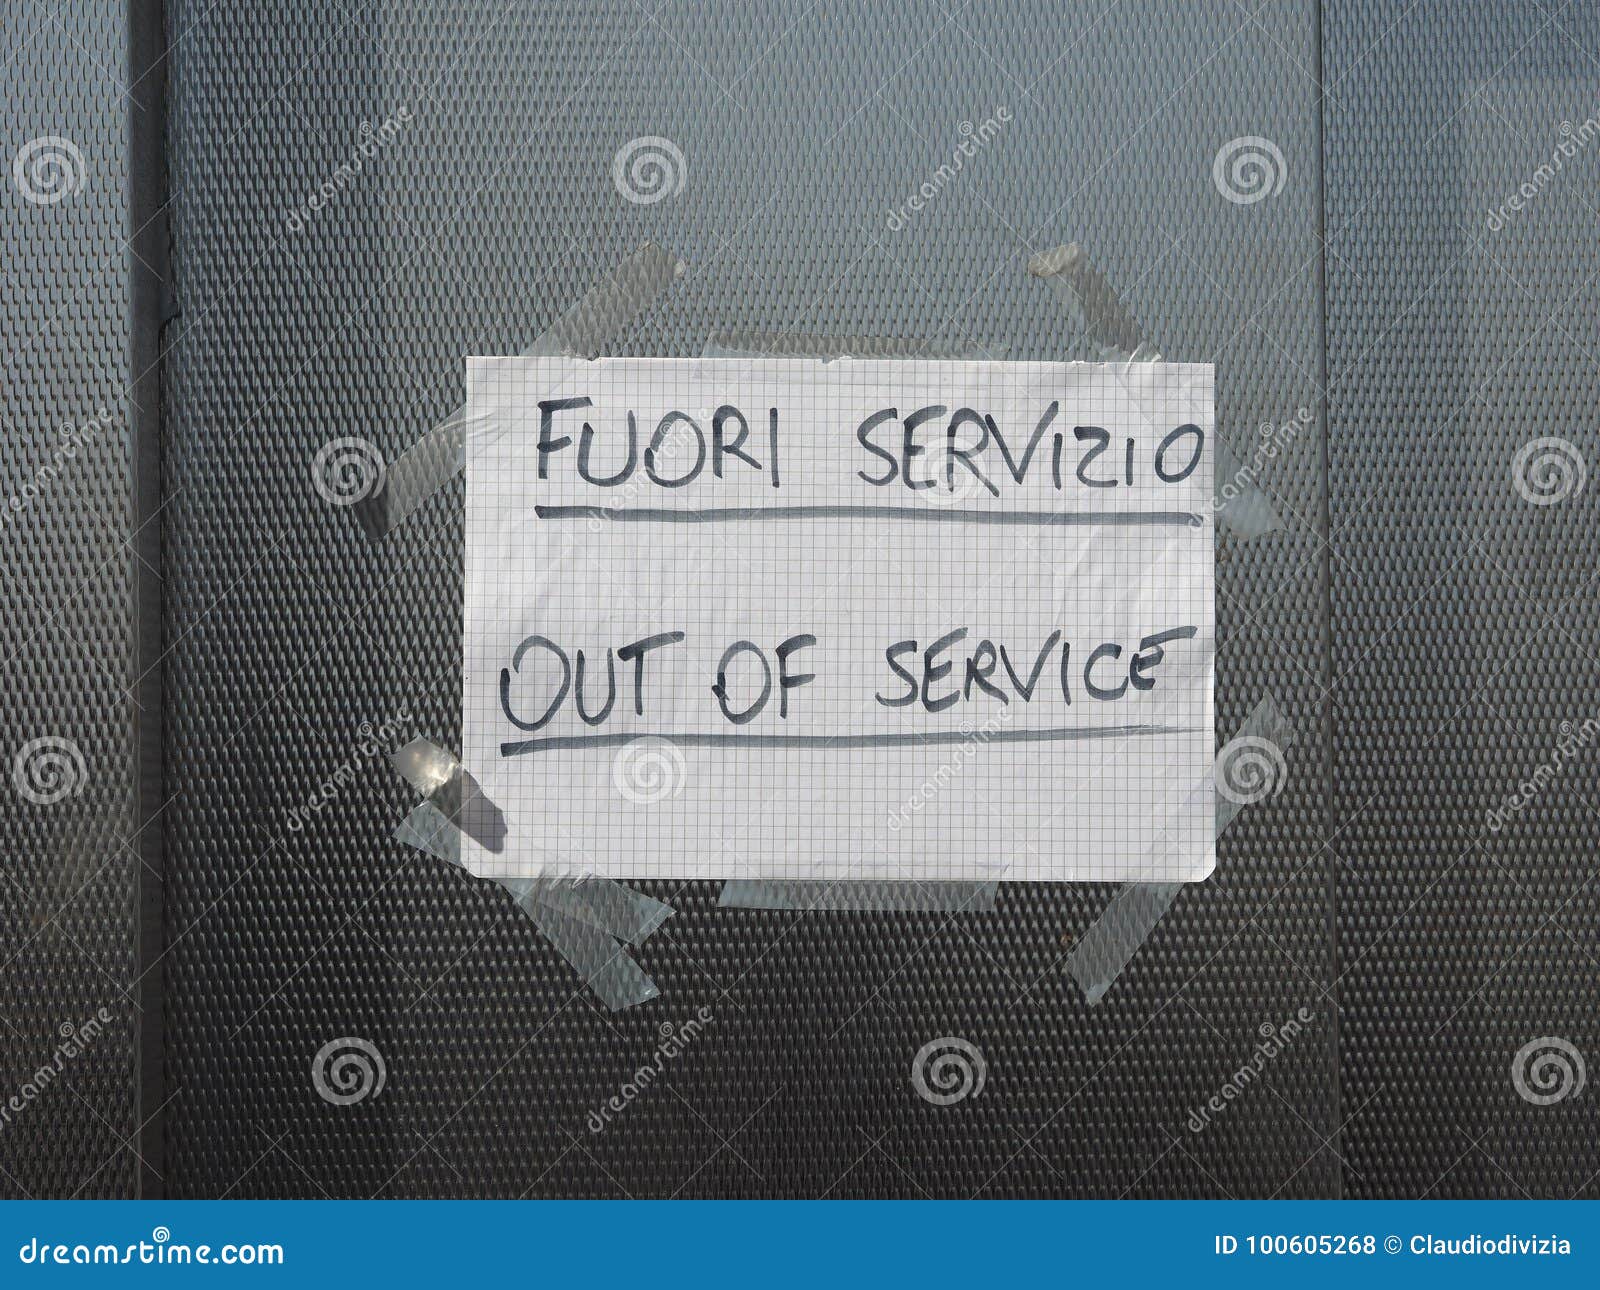 fuori servizio (out of order) sign